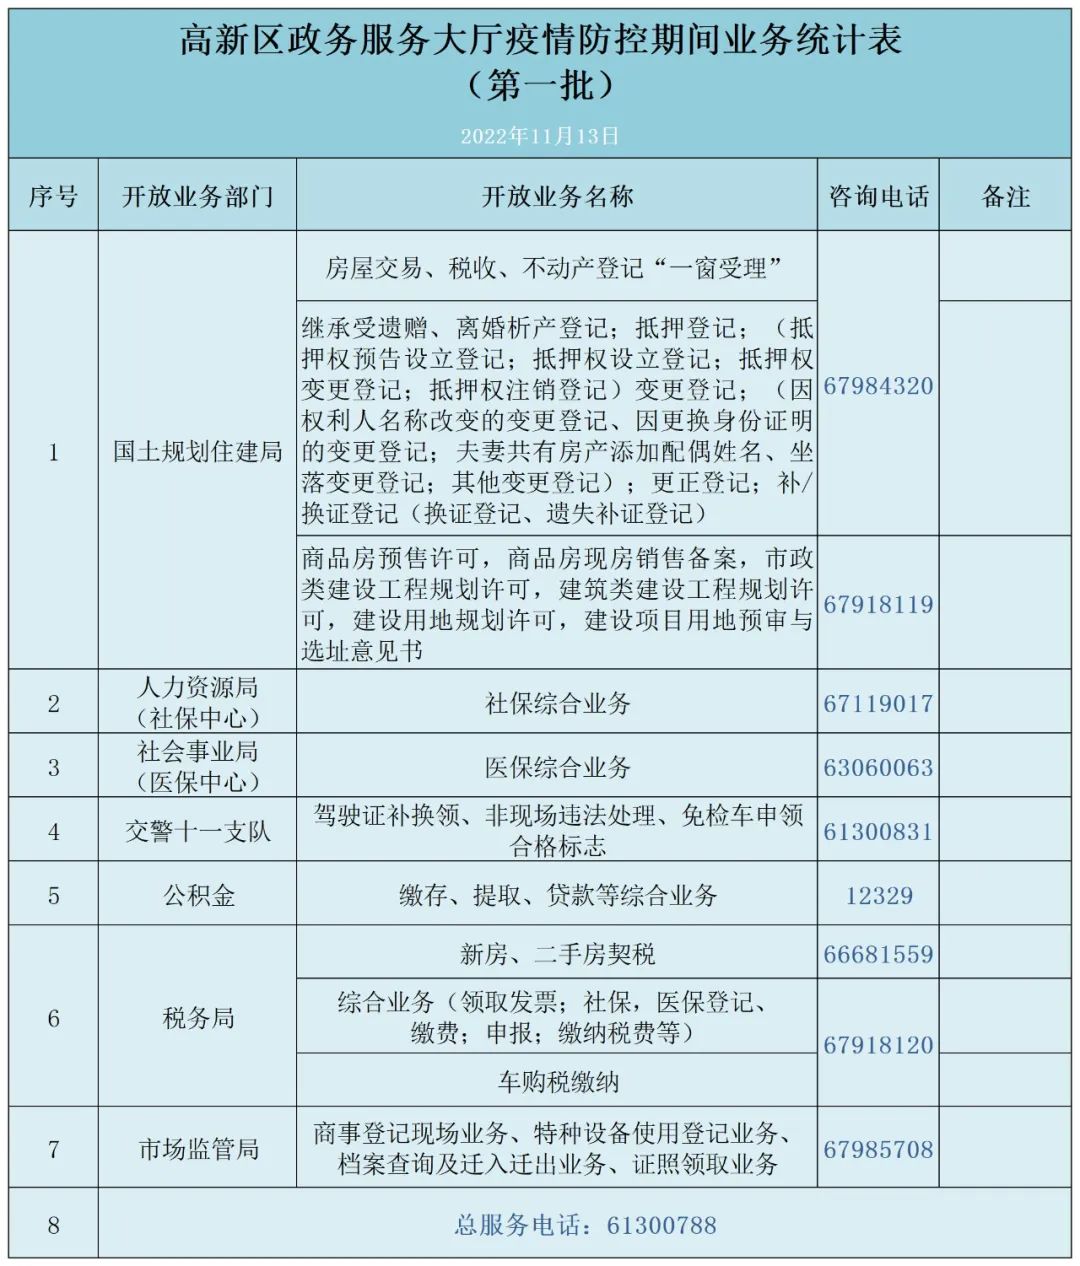 11月15日起 郑州高新区政务服务大厅有序分批恢复办理现场业务